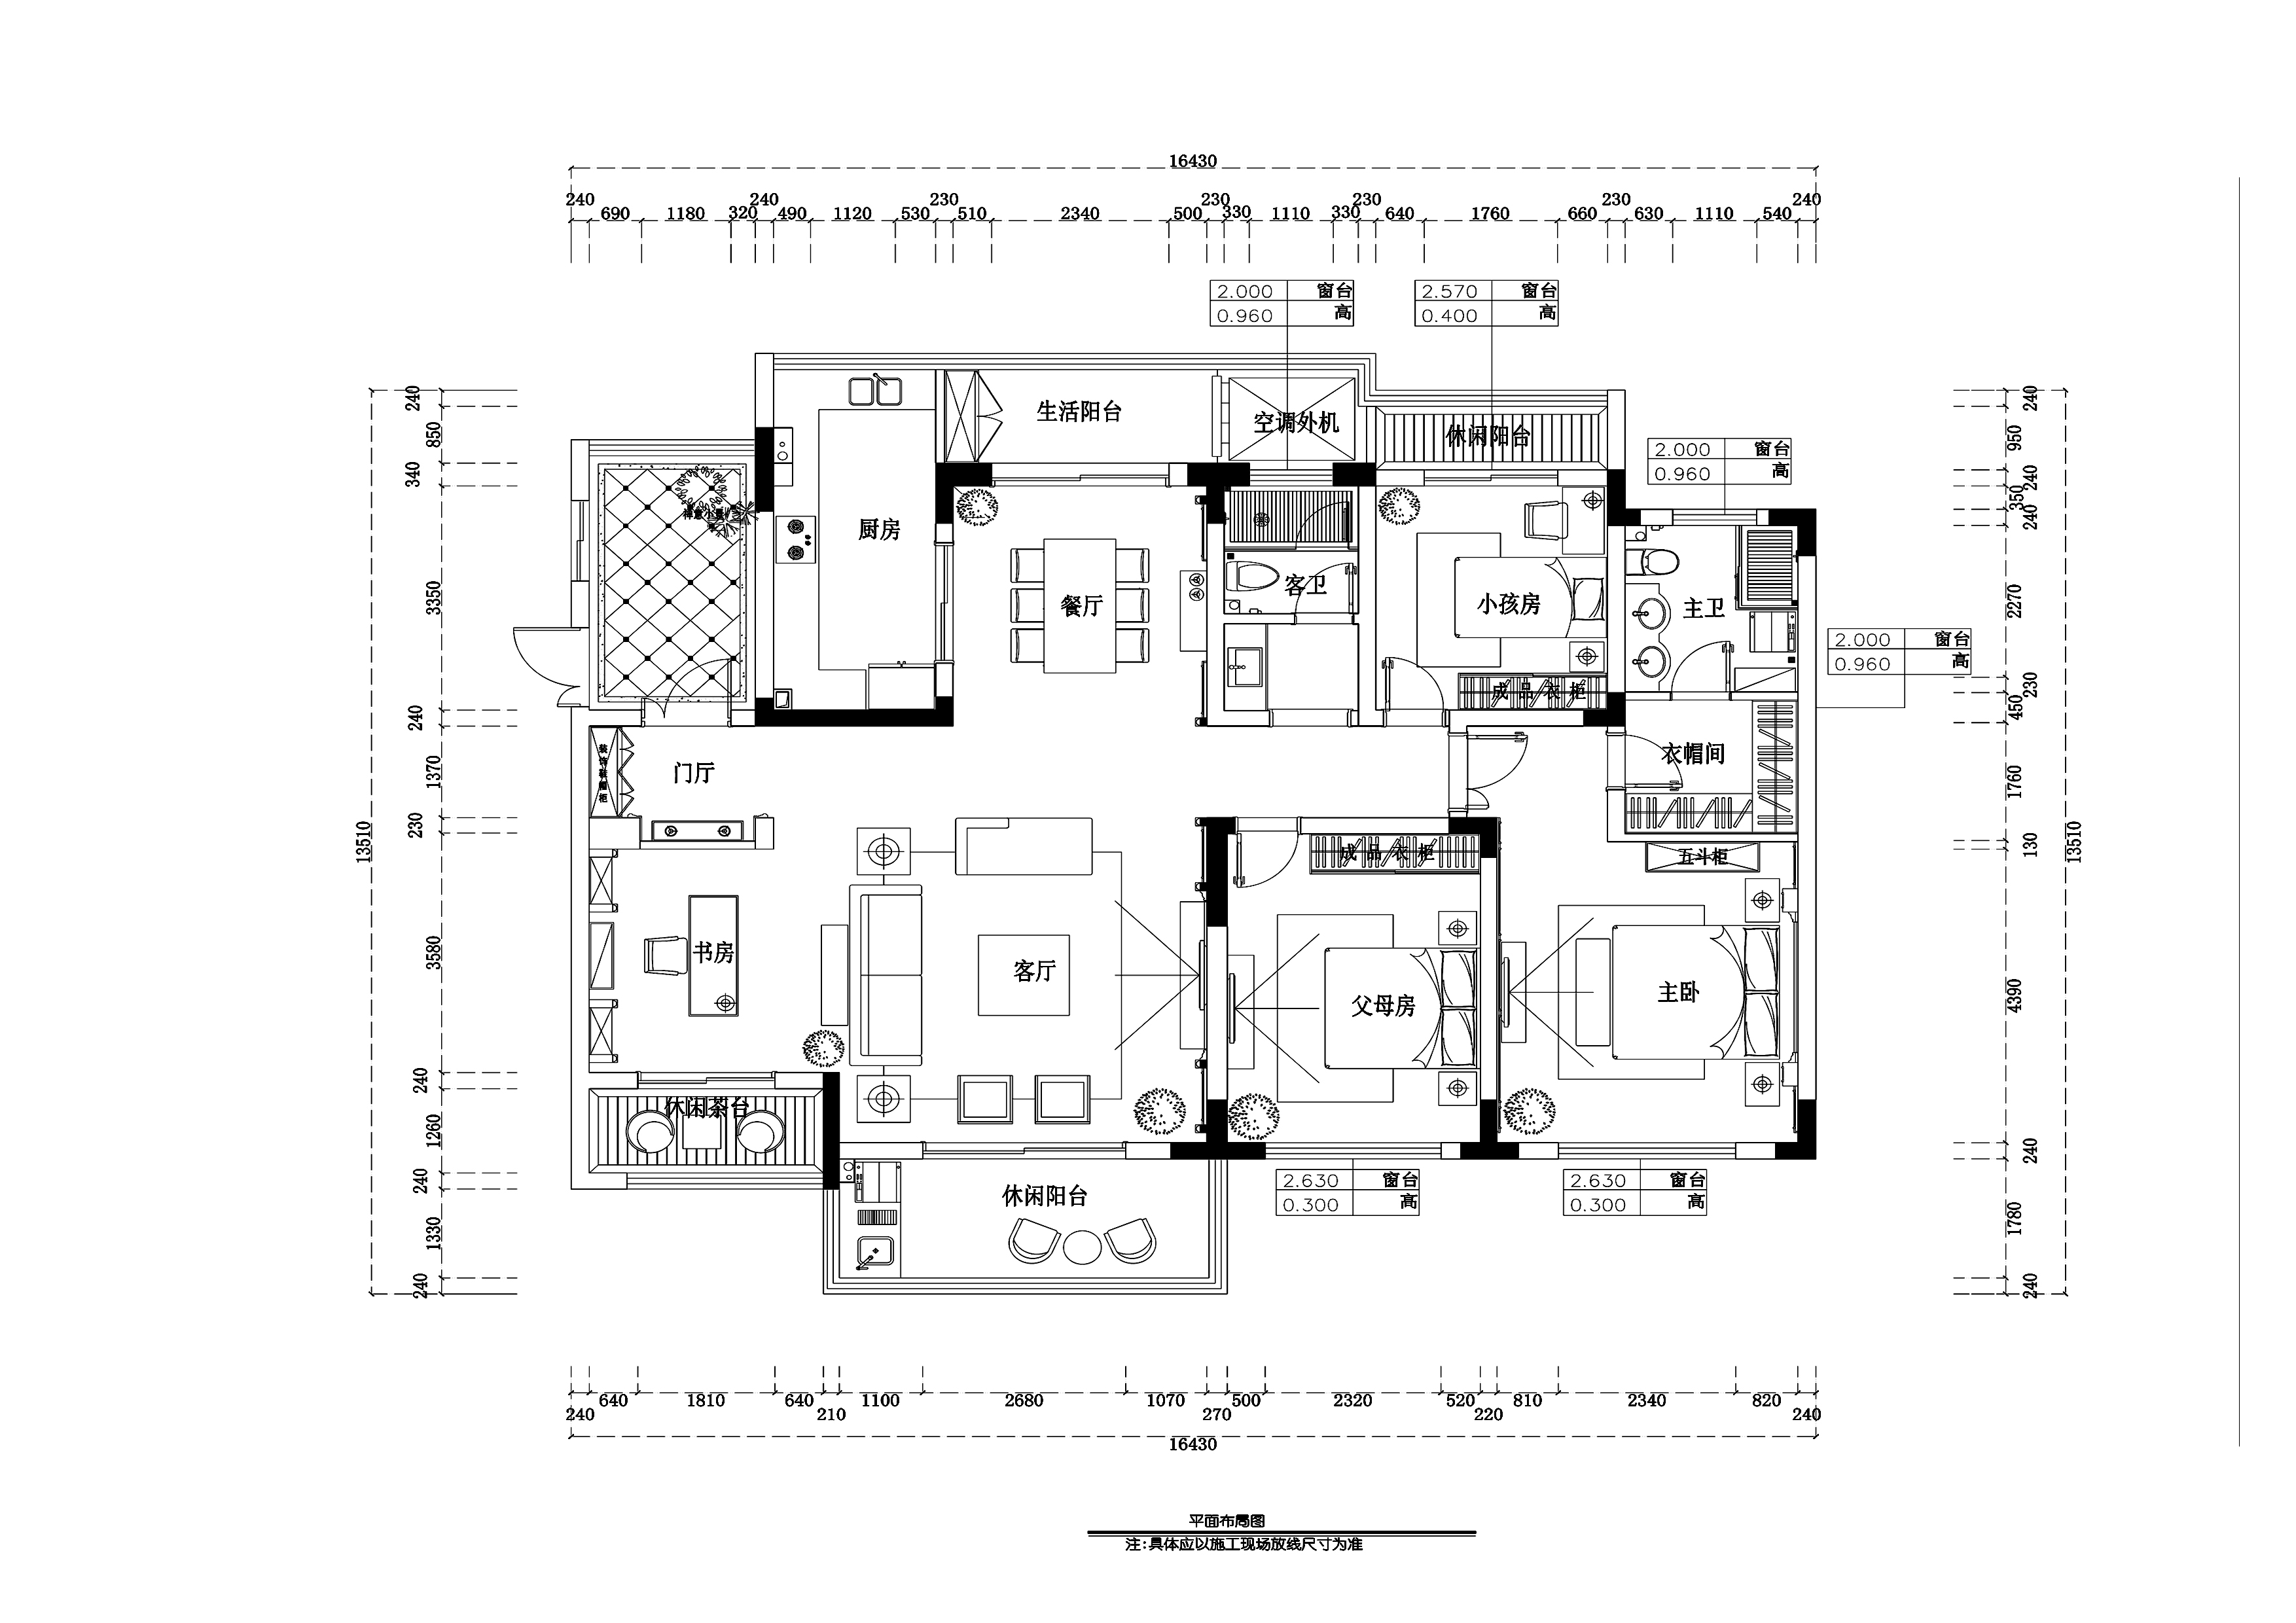 【合肥】滨湖假日金棕园欧式风格三室两厅平层公寓装修施工图